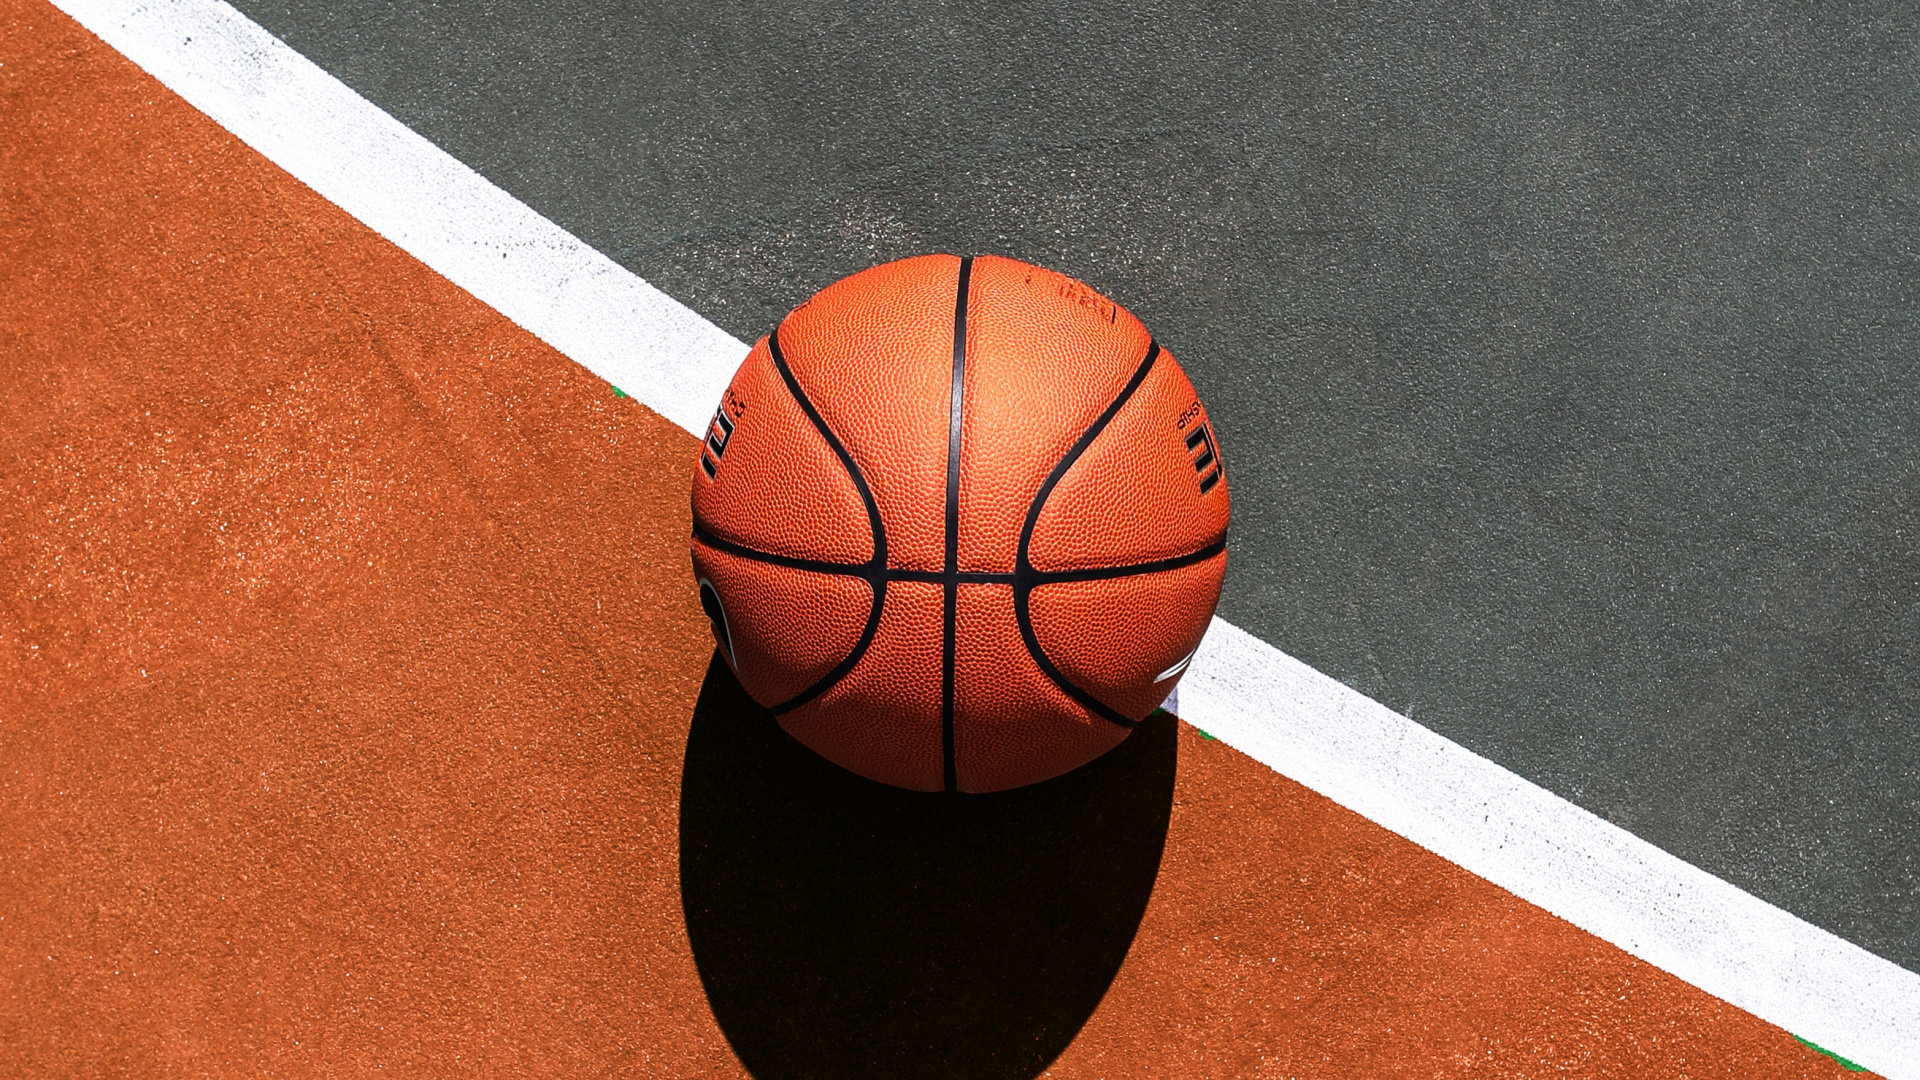 篮球, 篮球场, 运动场地, 球, 团队运动 壁纸 1920x1080 允许